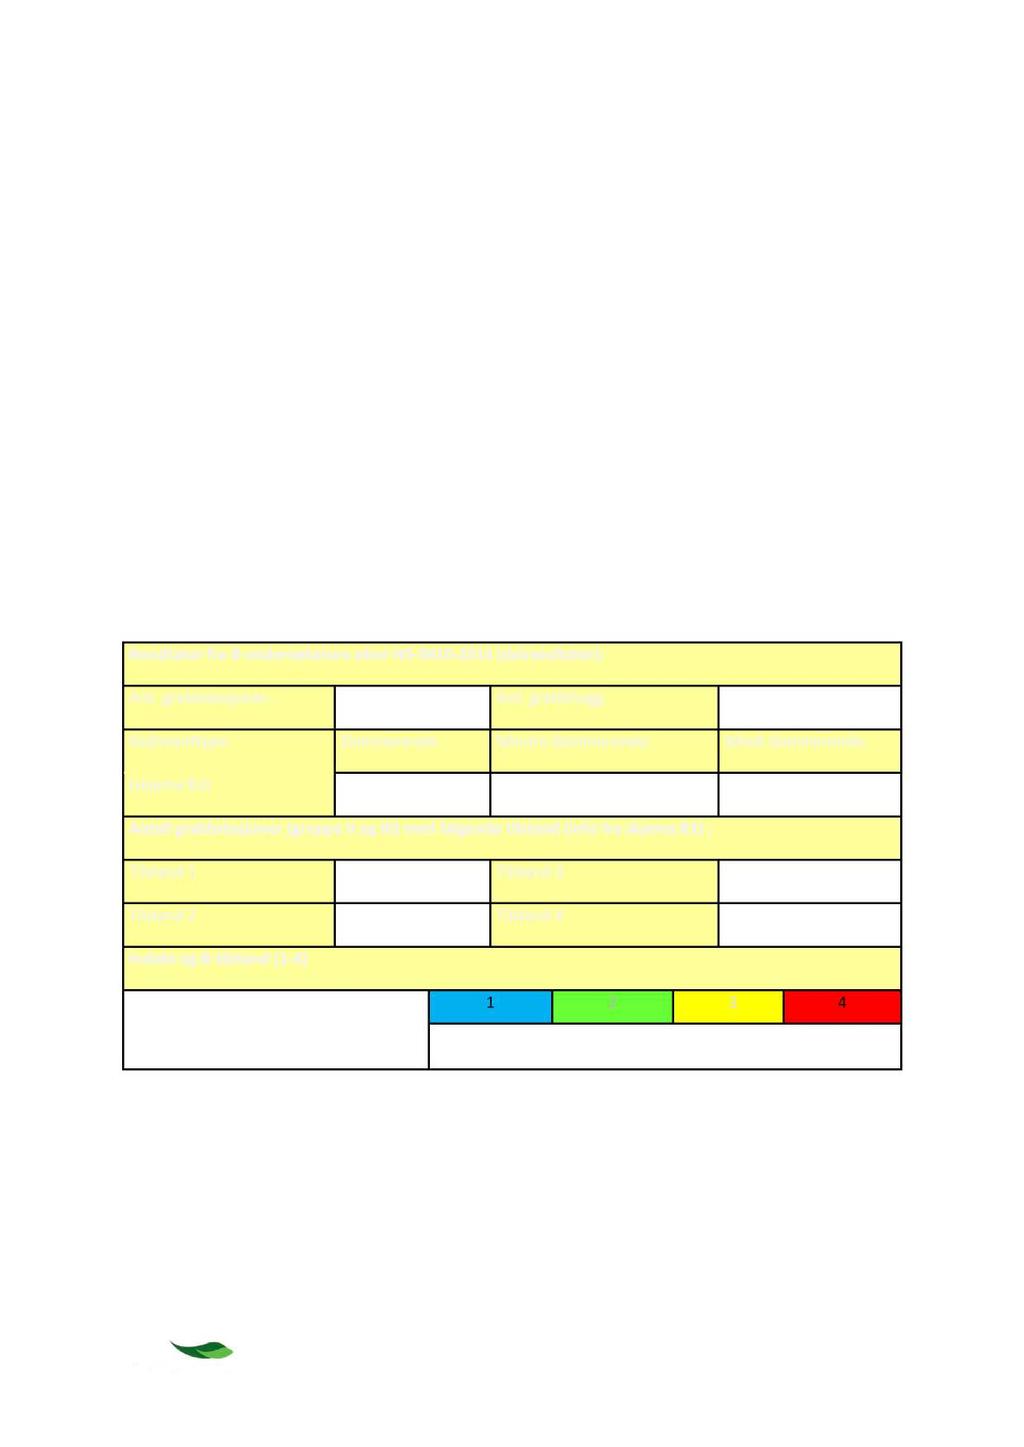 B - undersøkelsen Det ble samlet prøver fra 10 sta sjoner på lo kaliteten (Figur 2-2, 2-3 og 3-3, samt Tabell 3-2 ).